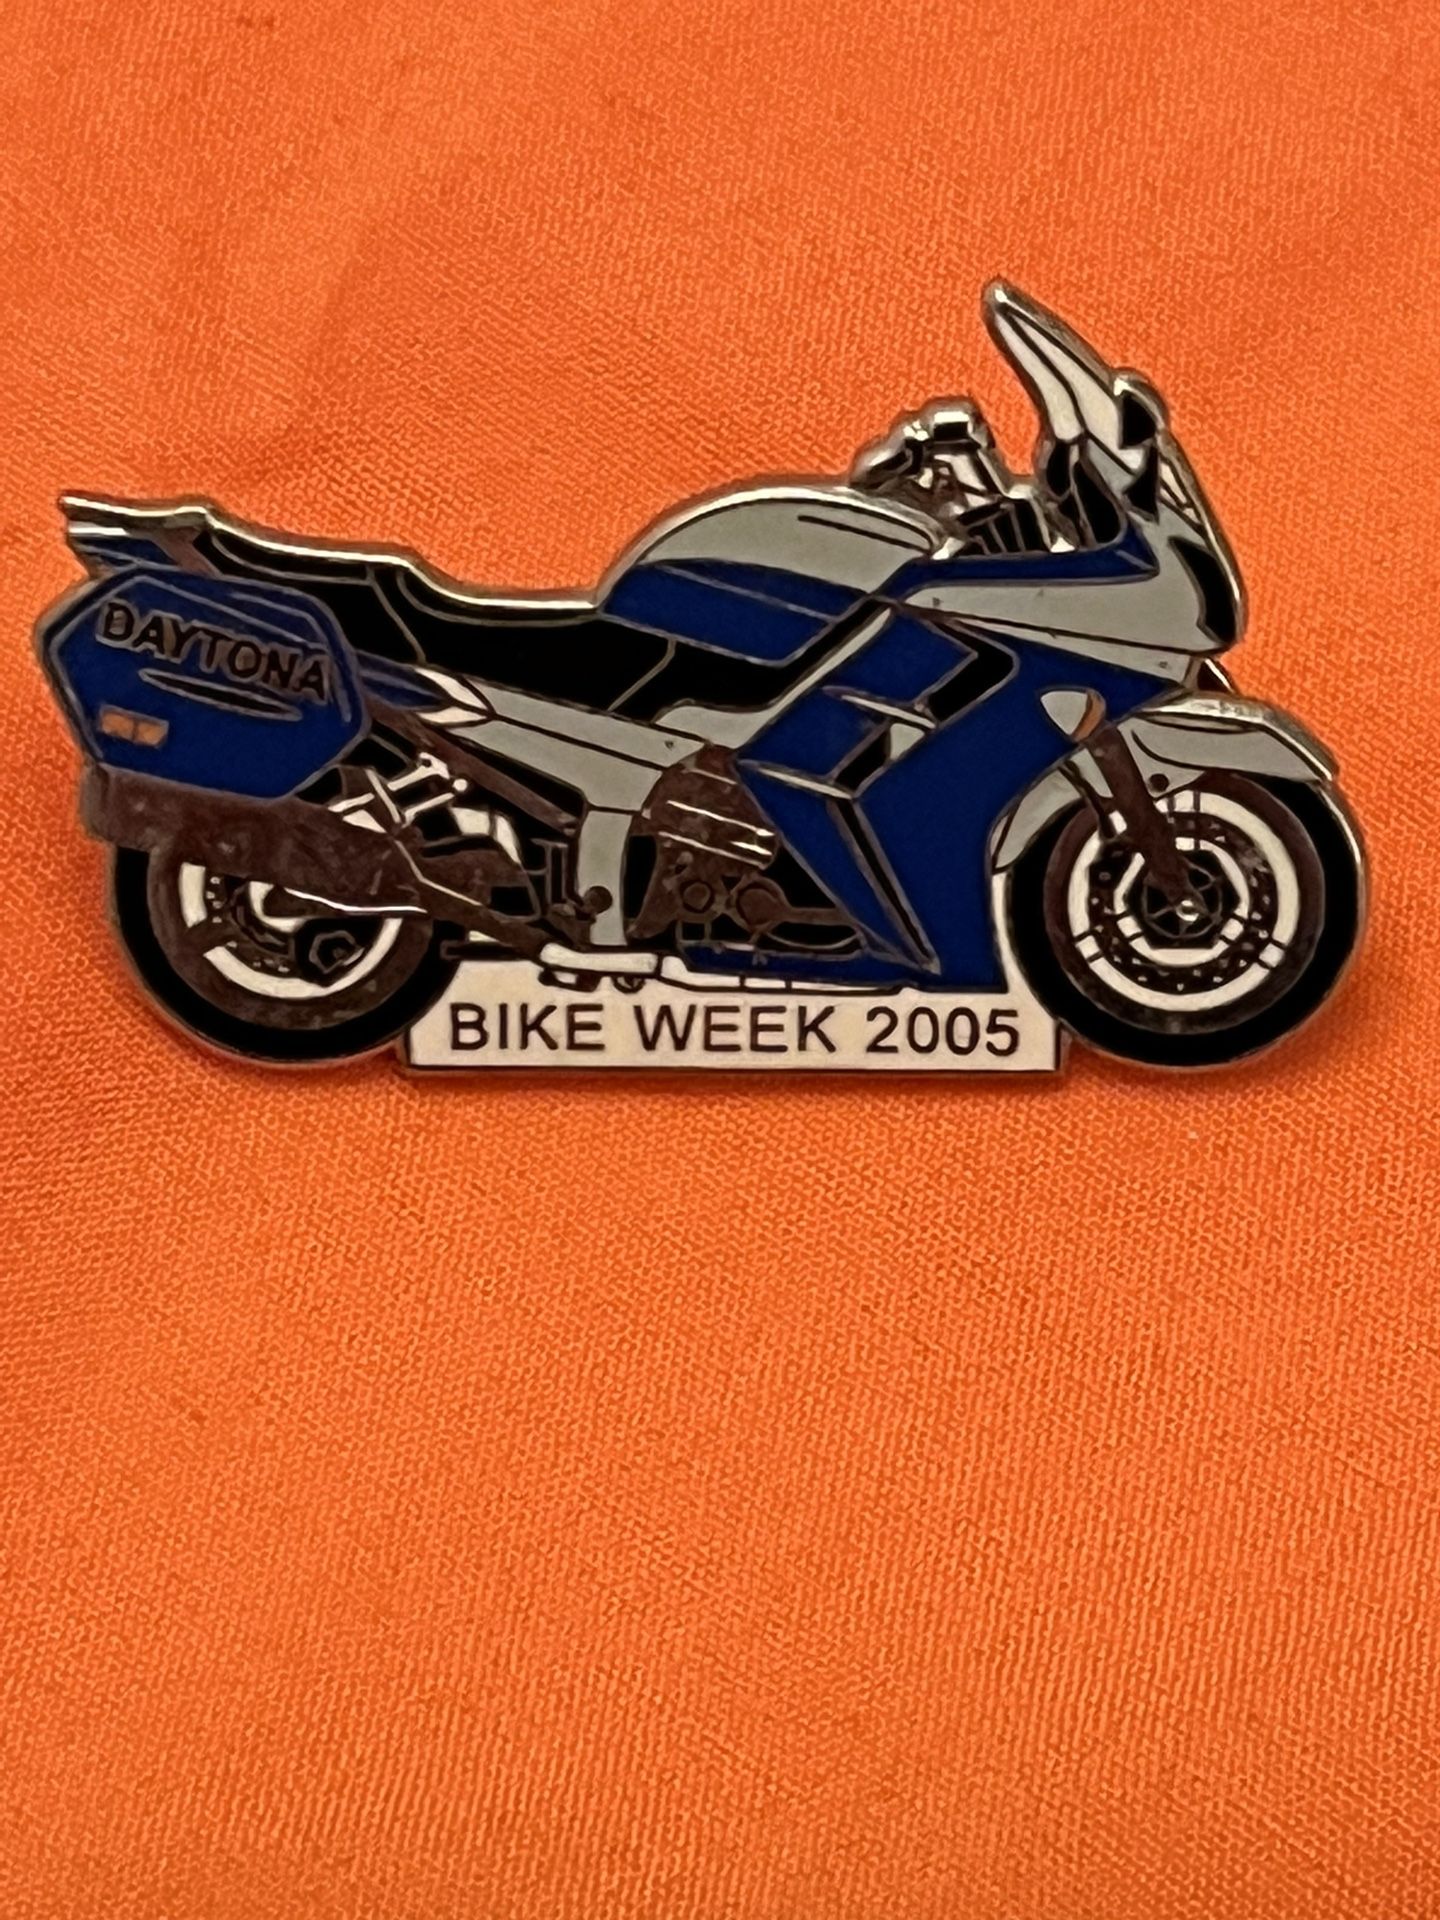 DAYTONA BIKE WEEK 2005 Blue Silver Black Motorcycle Tac Pin Collectible